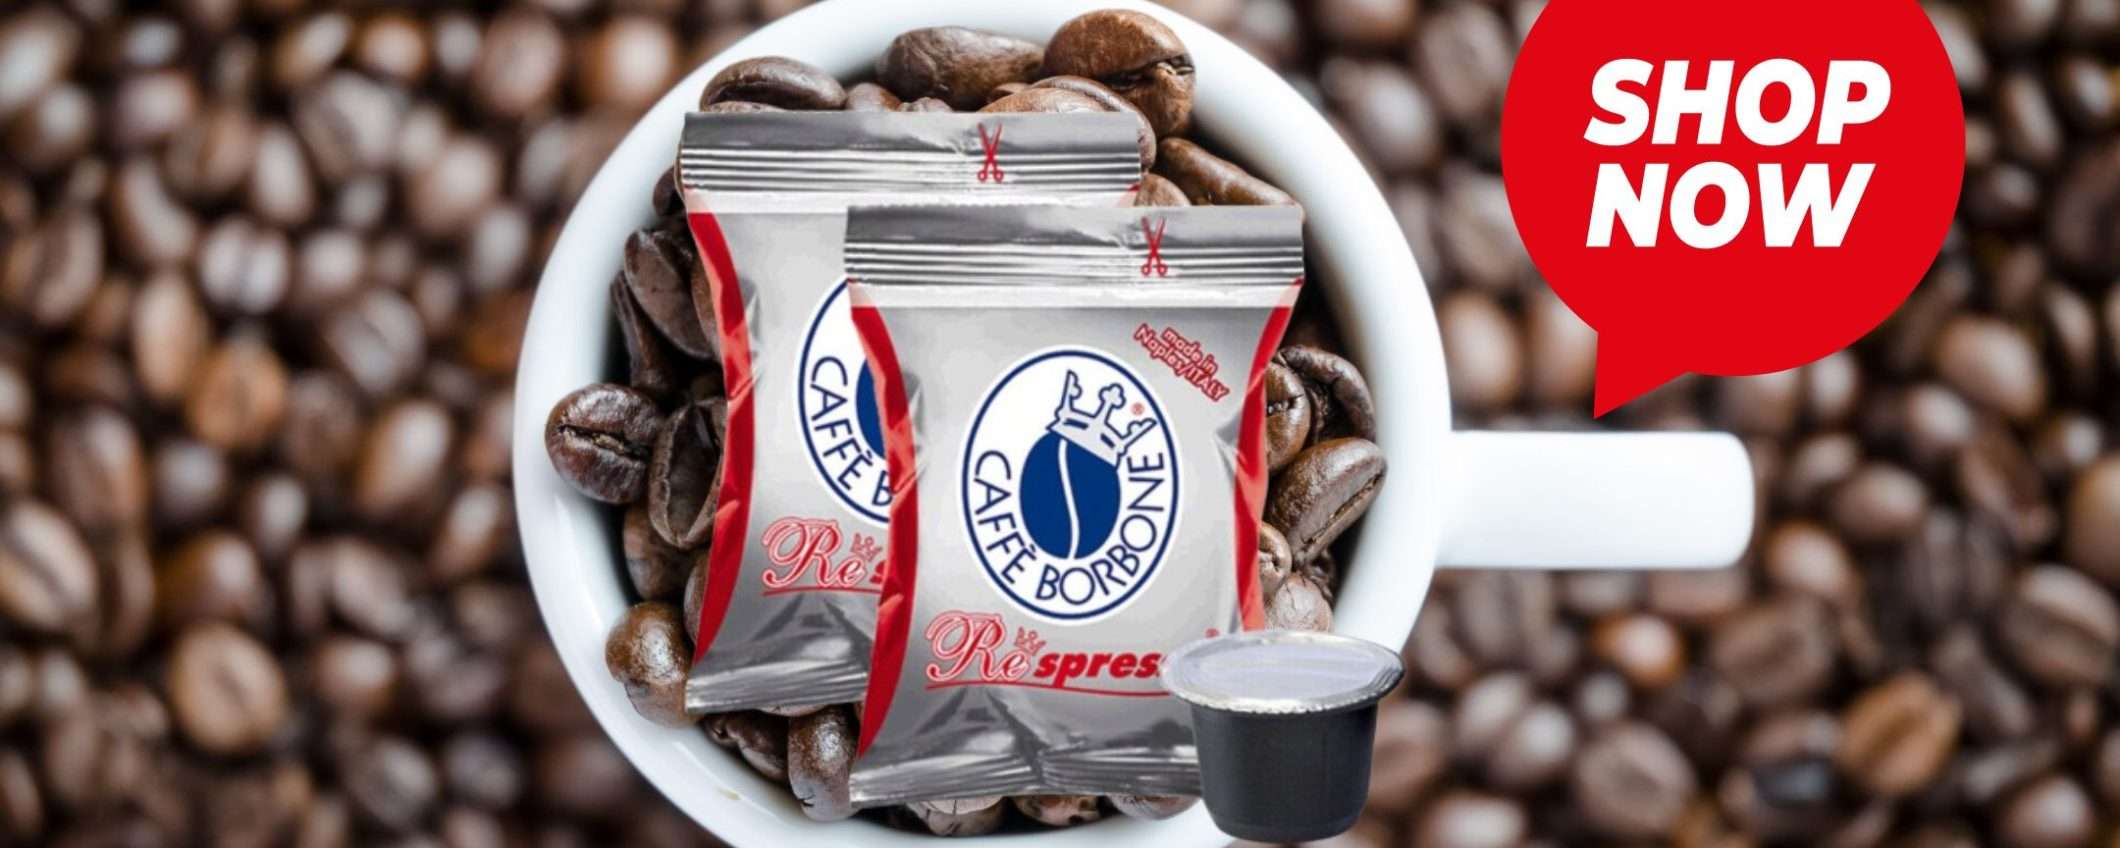 Caffè Borbone miscela Rossa: 400 capsule per Nespresso a un prezzo WOW